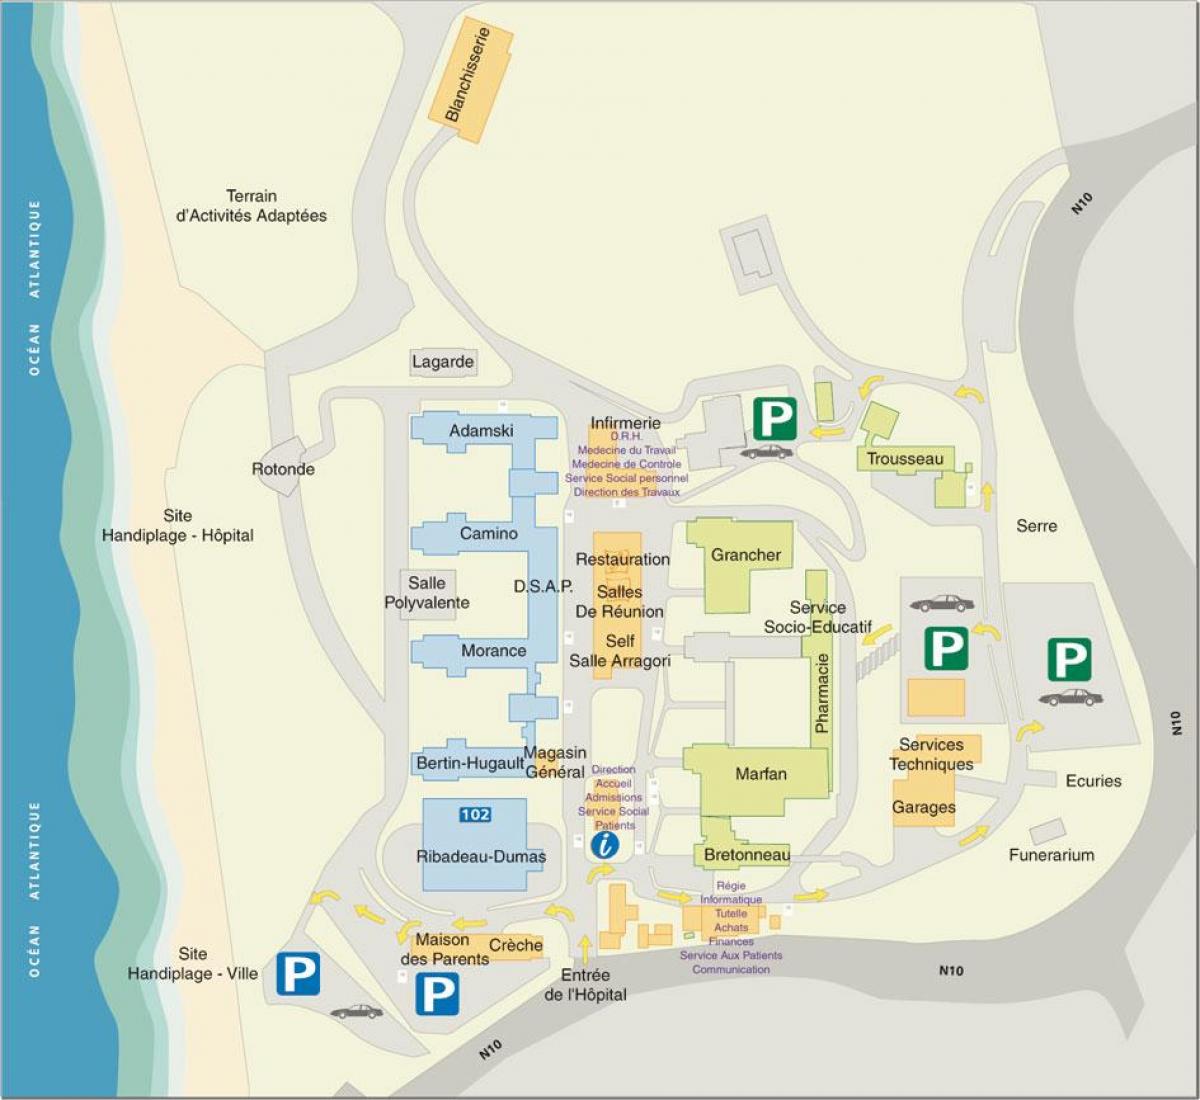 Marin haritası de Hendaye Hastanesi